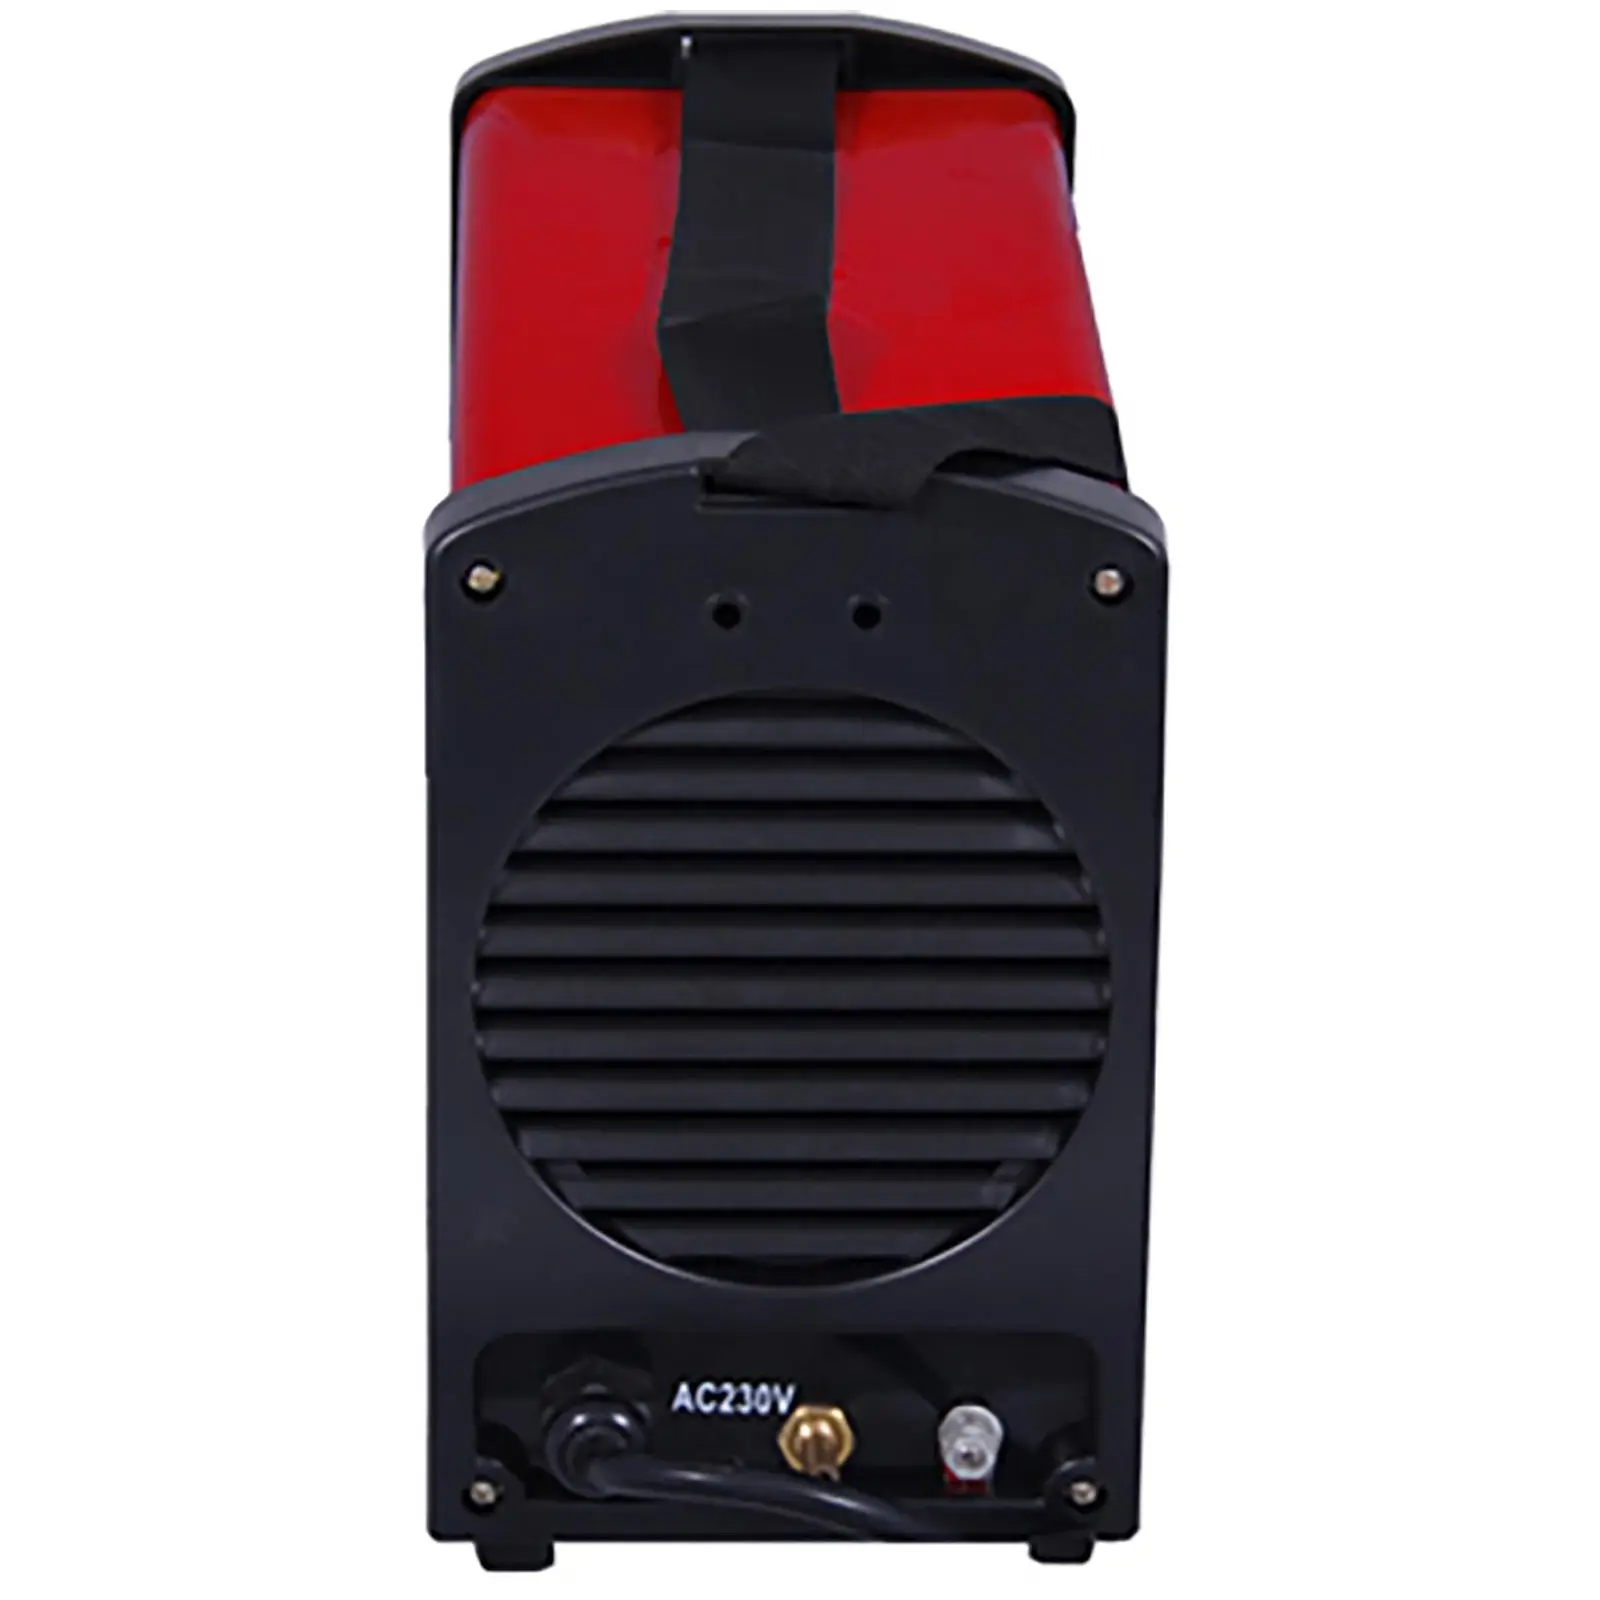 Set d'équipement de soudage Poste à souder TIG - 250A - 230V - portatif + Masque de soudure –Firestarter 500 – ADVANCED SERIES